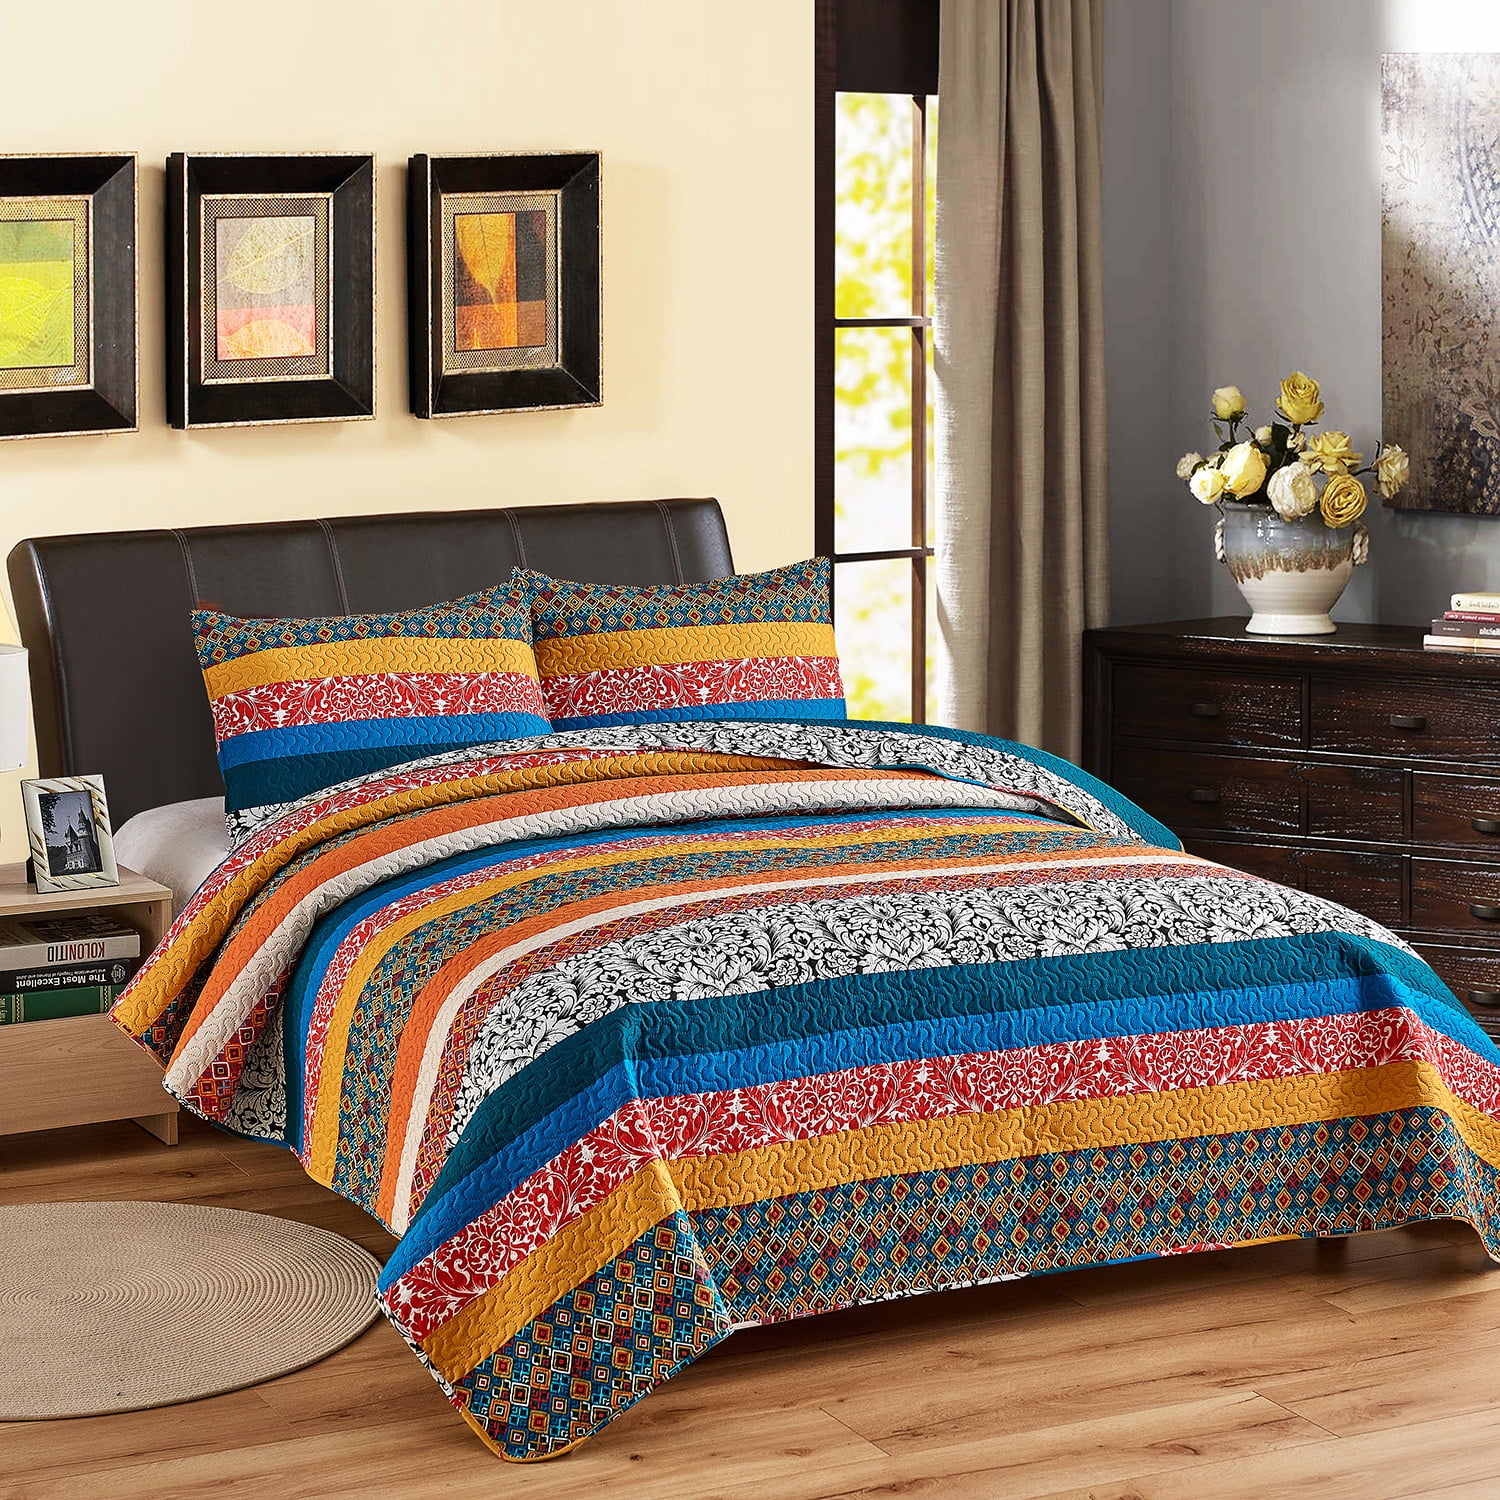 Details about   Exclusivo Mezcla 100% Cotton 3-Piece Multicolored Boho King Size Quilt Set/Bedsp 